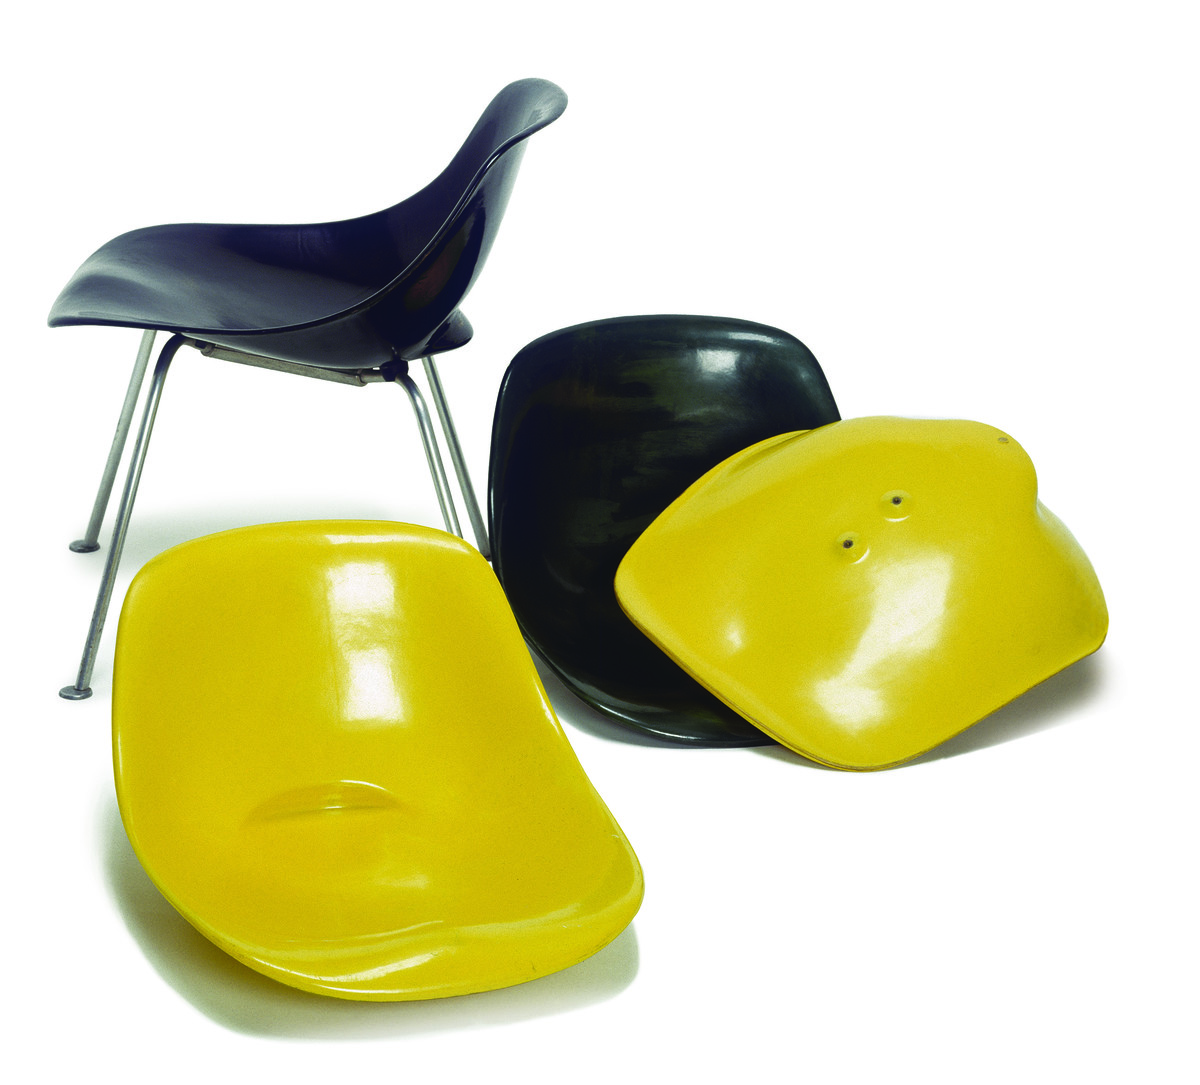 Willy Guhl, Scobalit-Stuhl mit abnehmbaren Sitzschalen (Polyester), 1948, Museum für Gestaltung Zürich, Designsammlung, Foto: FX. Jaggy und U. Romito, © ZHdK